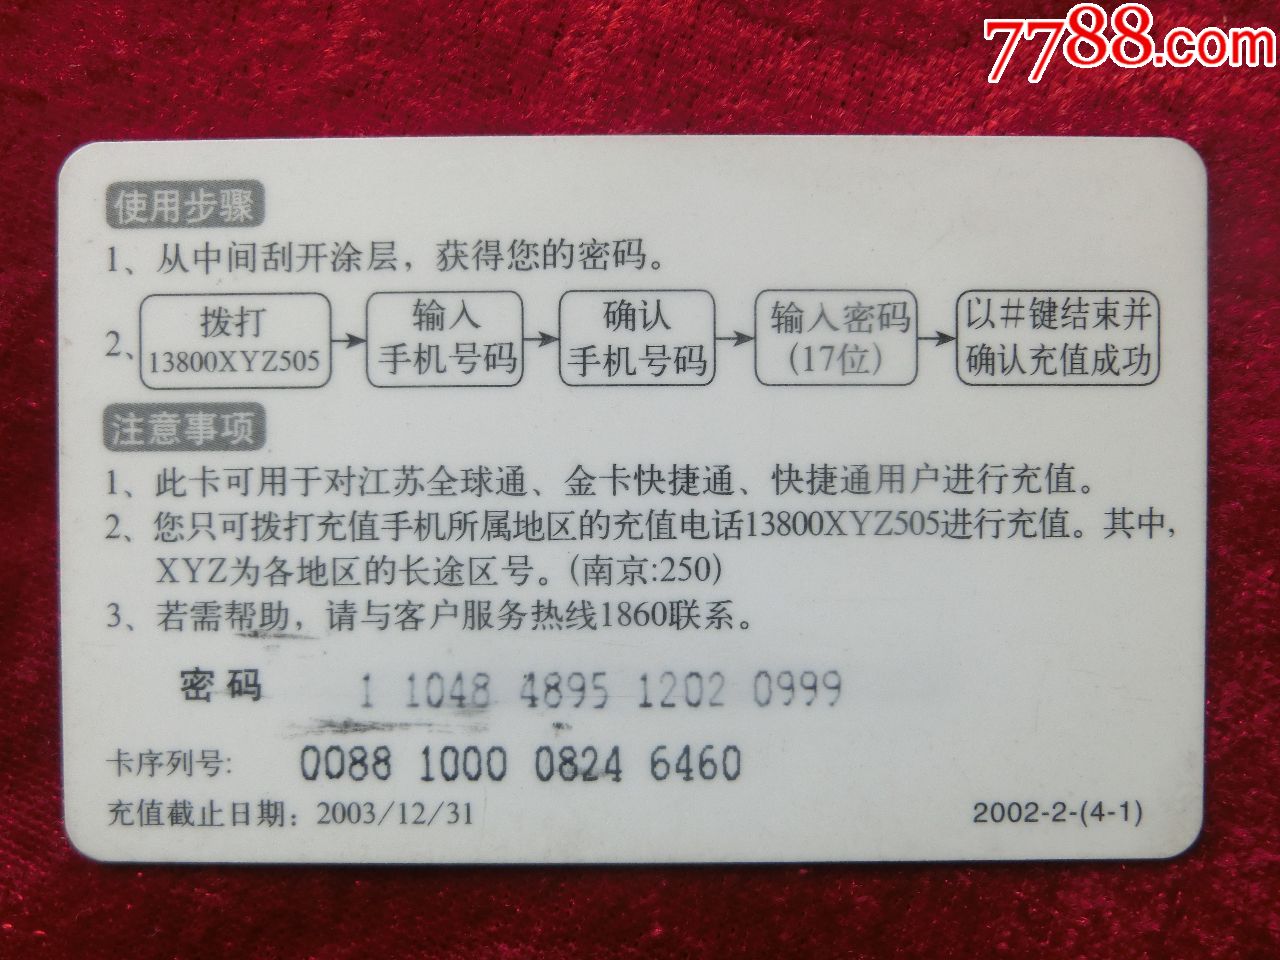 江苏移动电话充值卡:2002-2-(4-1)移动梦网